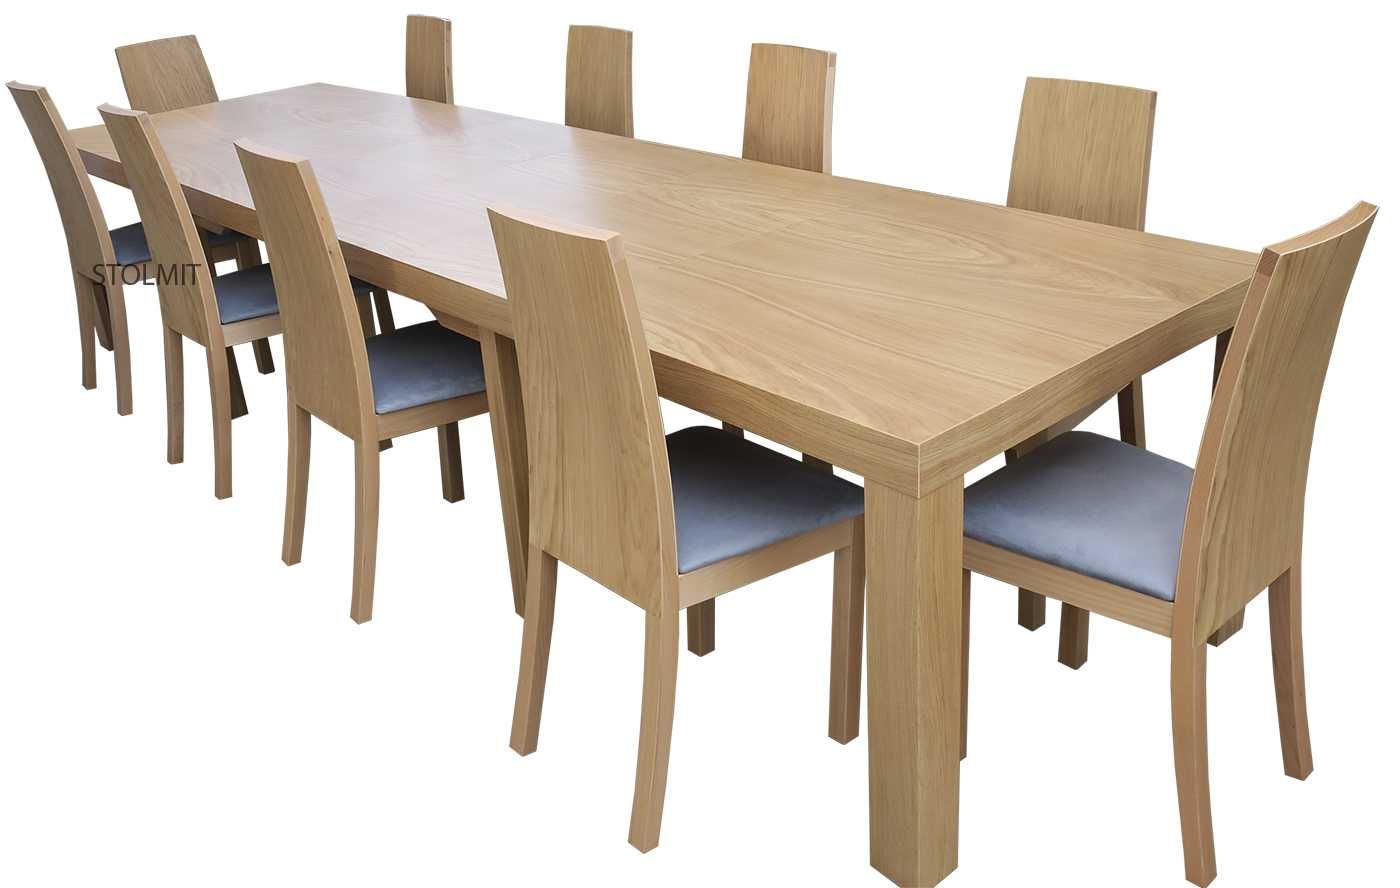 8 krzeseł stół rozkładany do dużych wymiarów od 180 do 380 - wysyłka